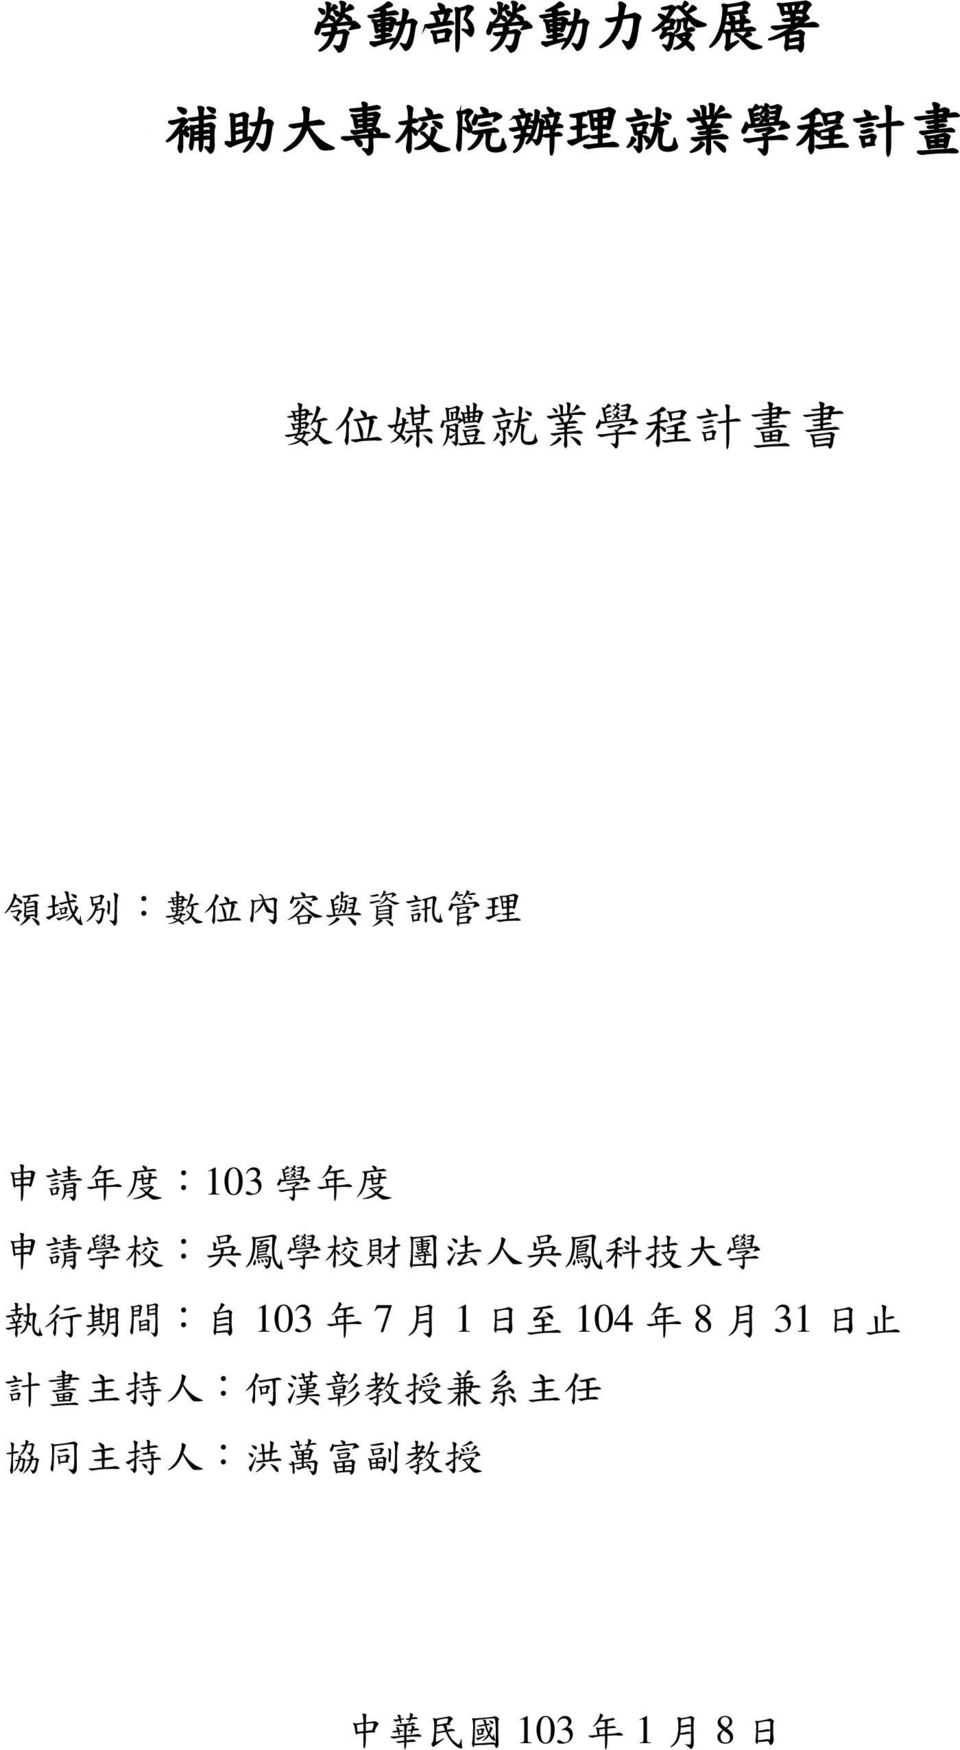 法 人 吳 鳳 科 技 大 學 執 行 期 間 : 自 103 年 7 月 1 日 至 104 年 8 月 31 日 止 計 畫 主